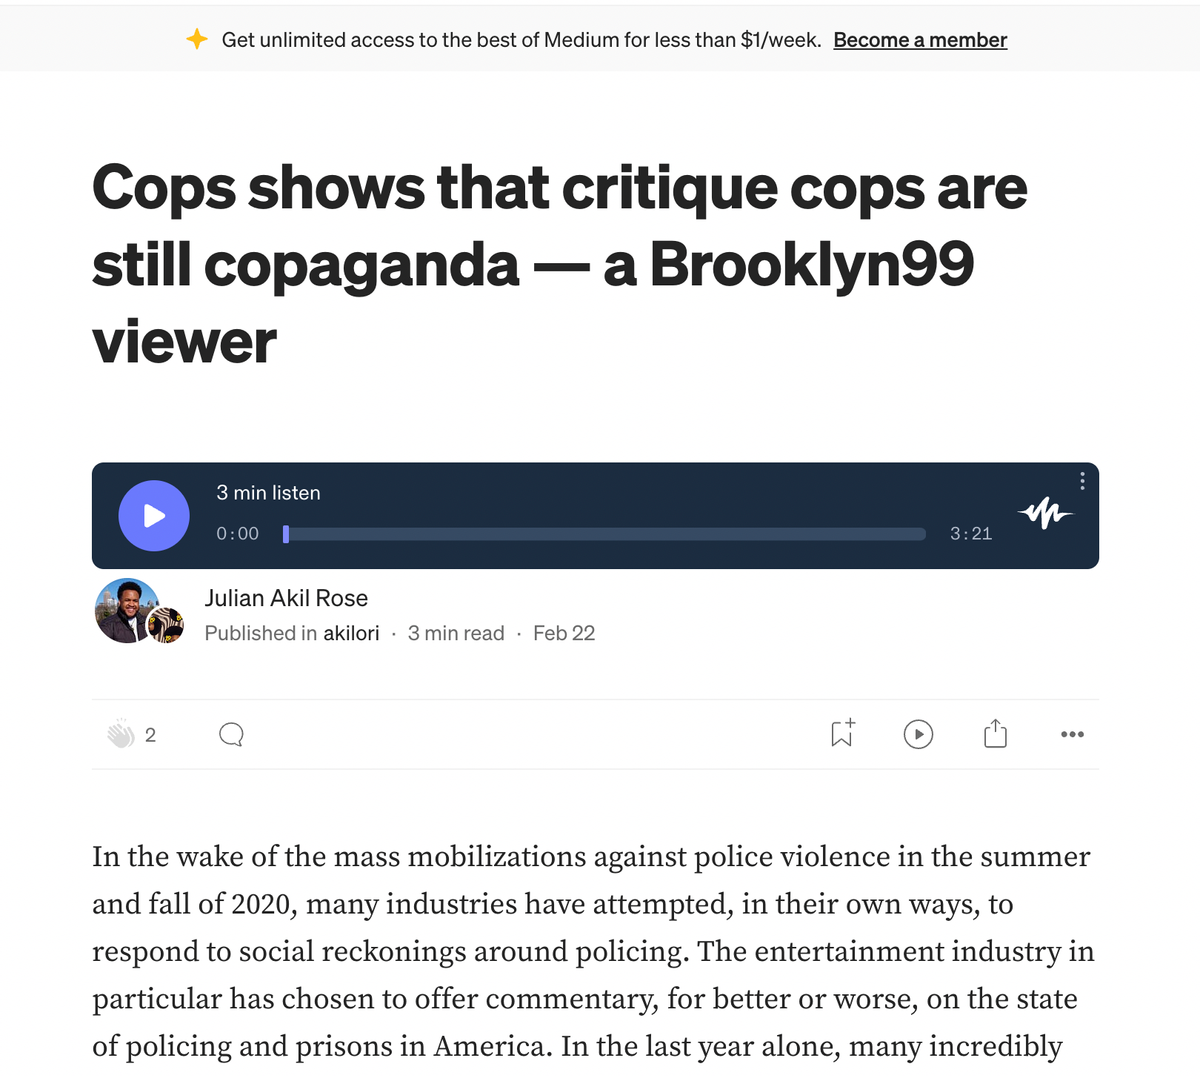 Cops shows that critique cops are still copaganda - a Brooklyn99 viewer